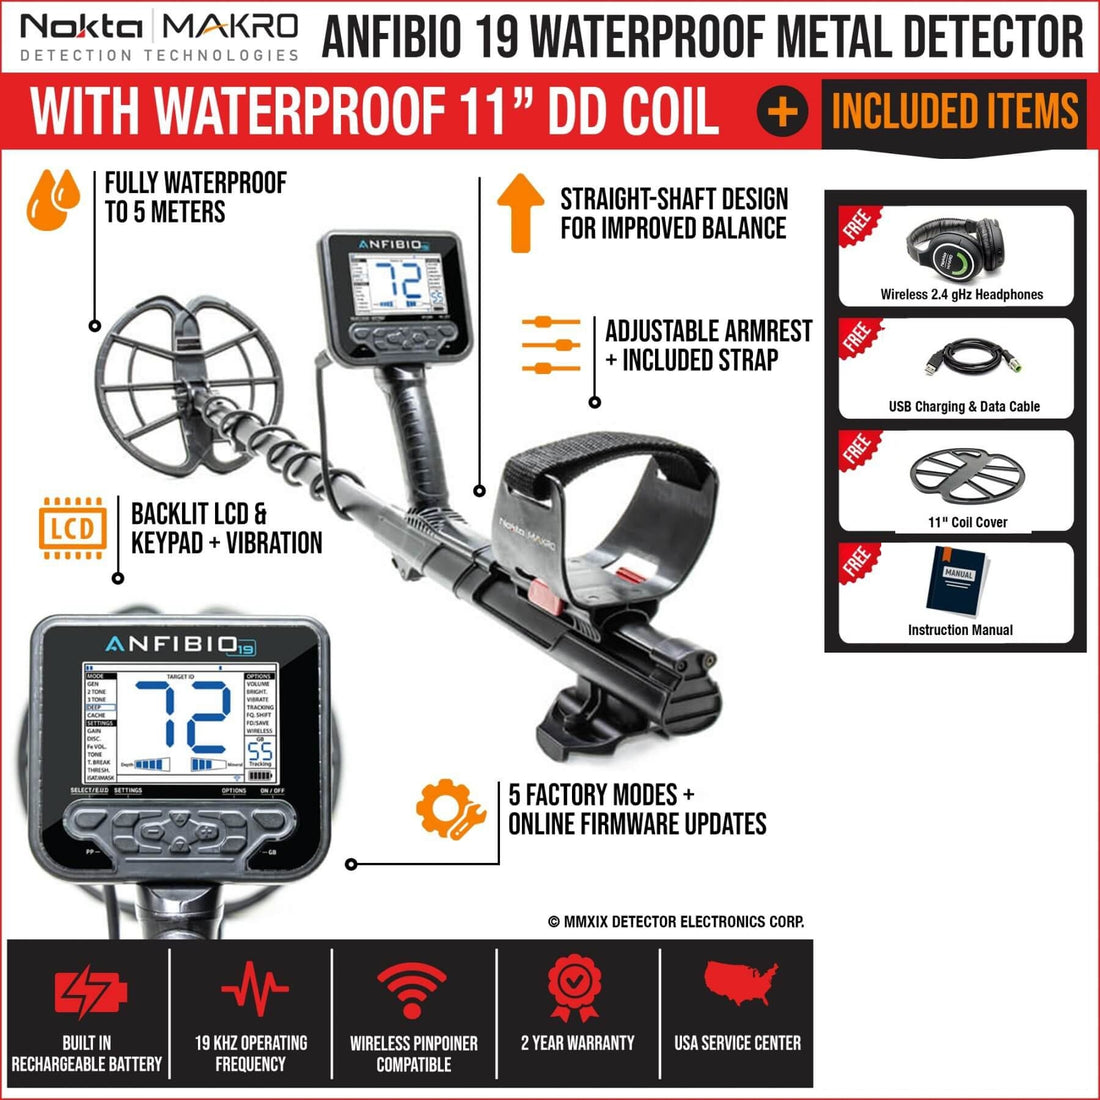 Nokta Makro Anfibio 19 Waterproof Metal Detector - See Included Items